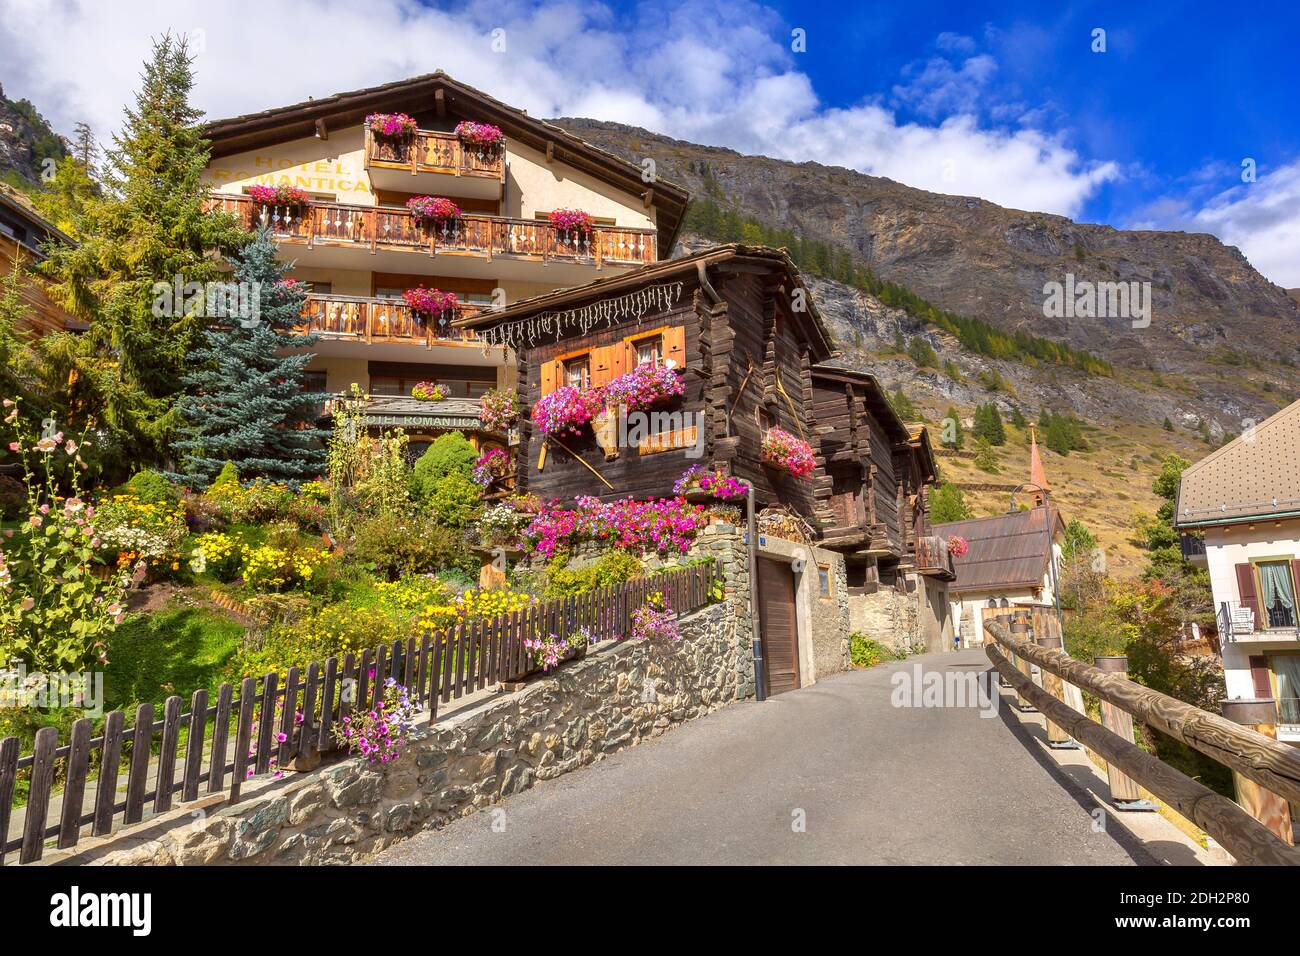 Maisons dans le village alpin de Zermatt, Suisse Banque D'Images